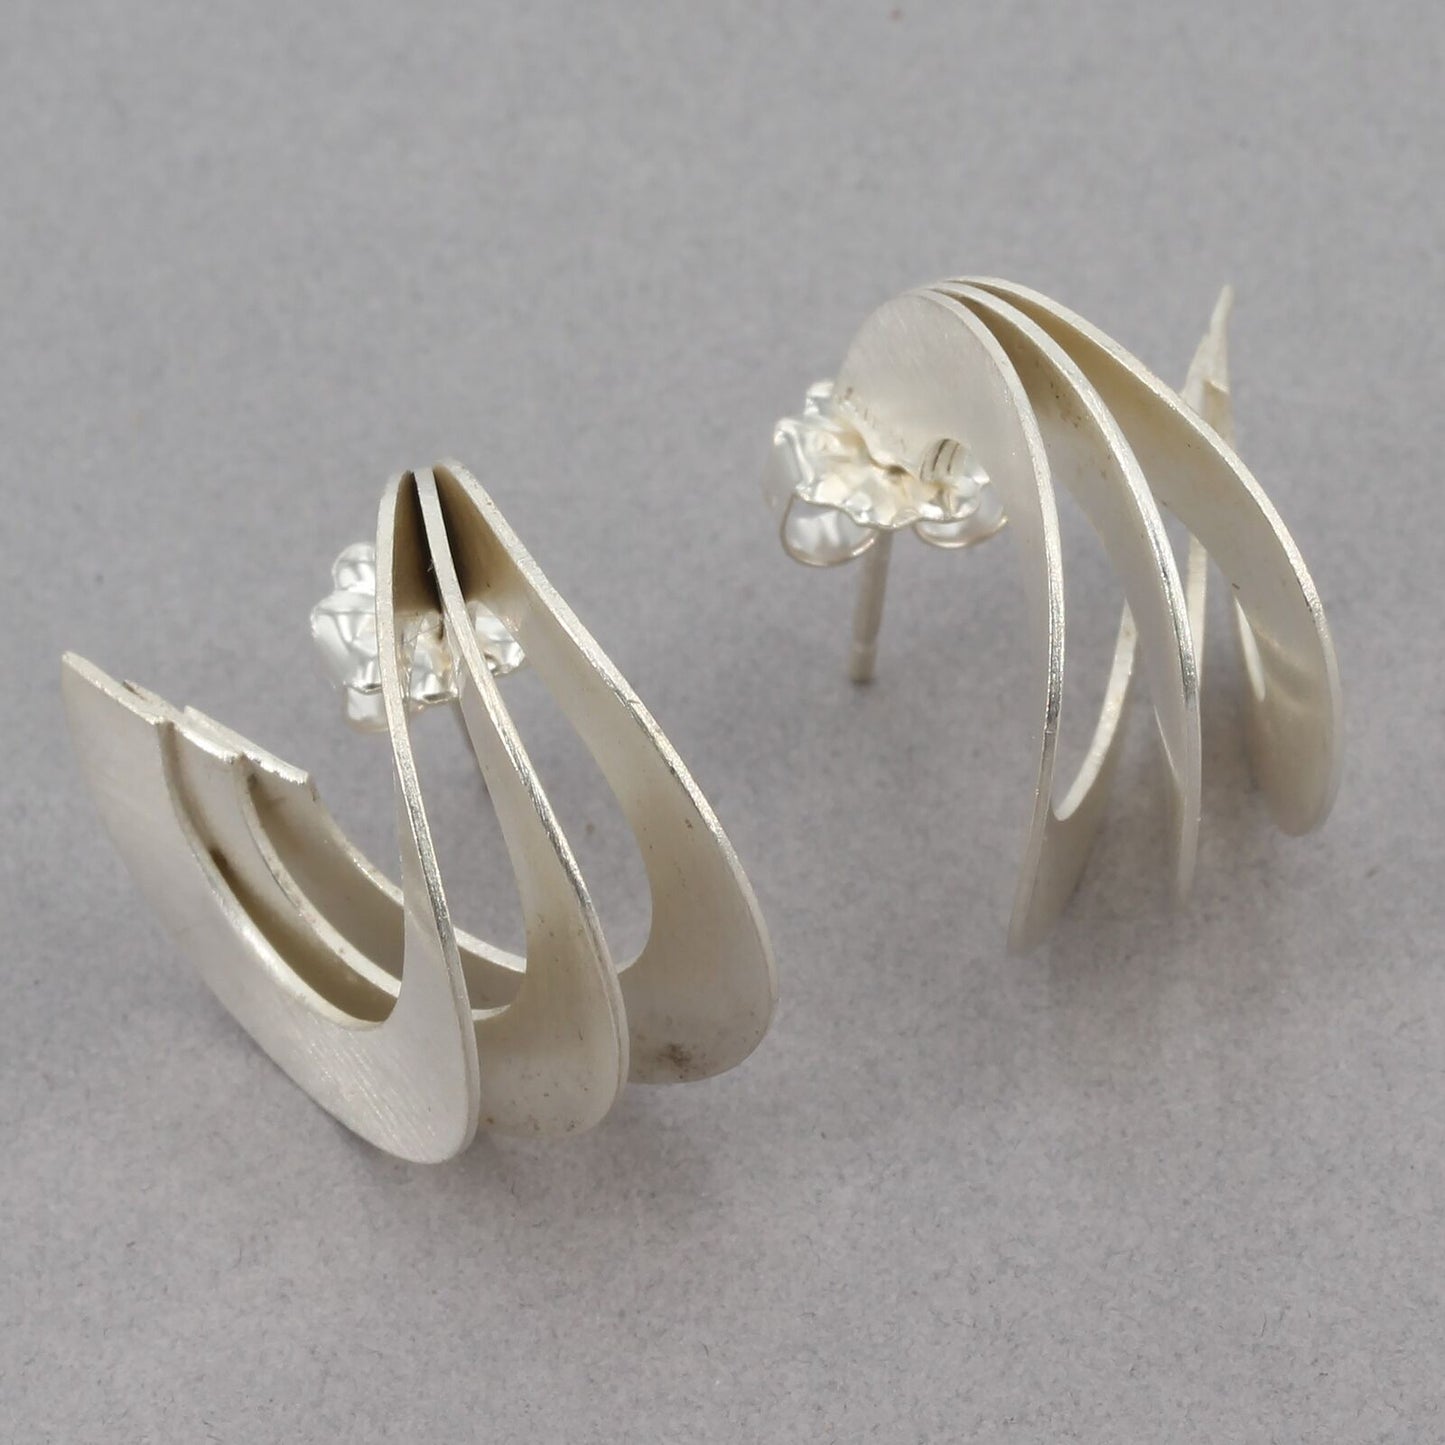 Handcrafted Modernist Sterling Triple Hoop Earrings TEZER by Sema Sezen Germany